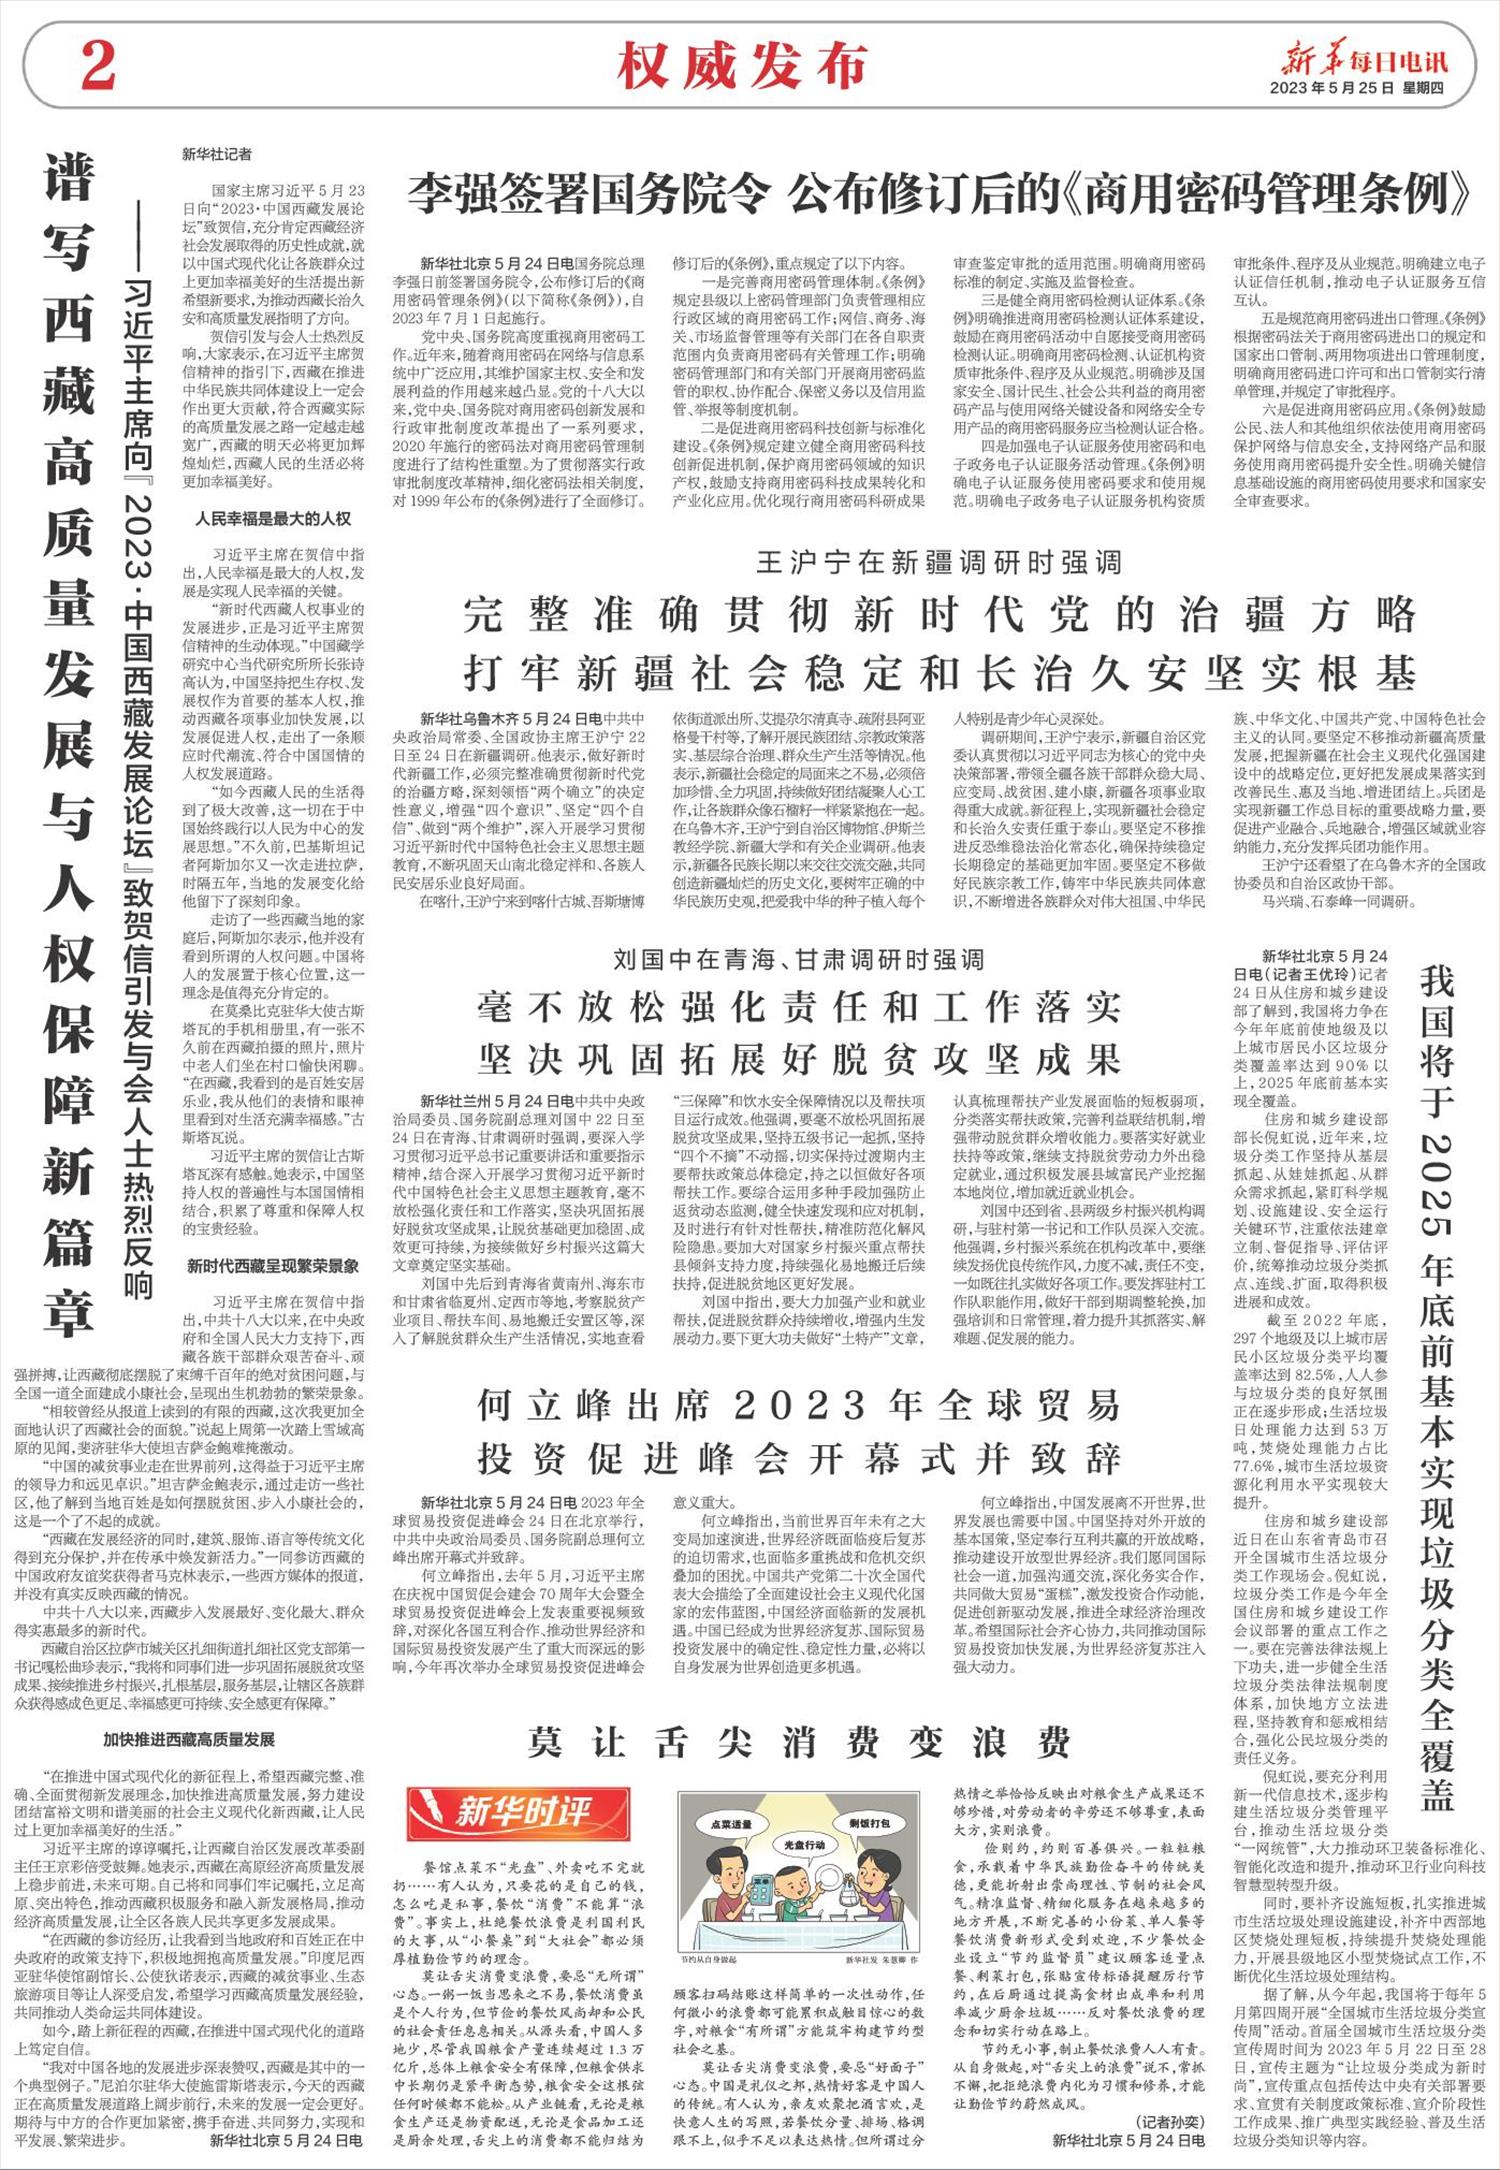 新华每日电讯-微报纸-2023年05月25日